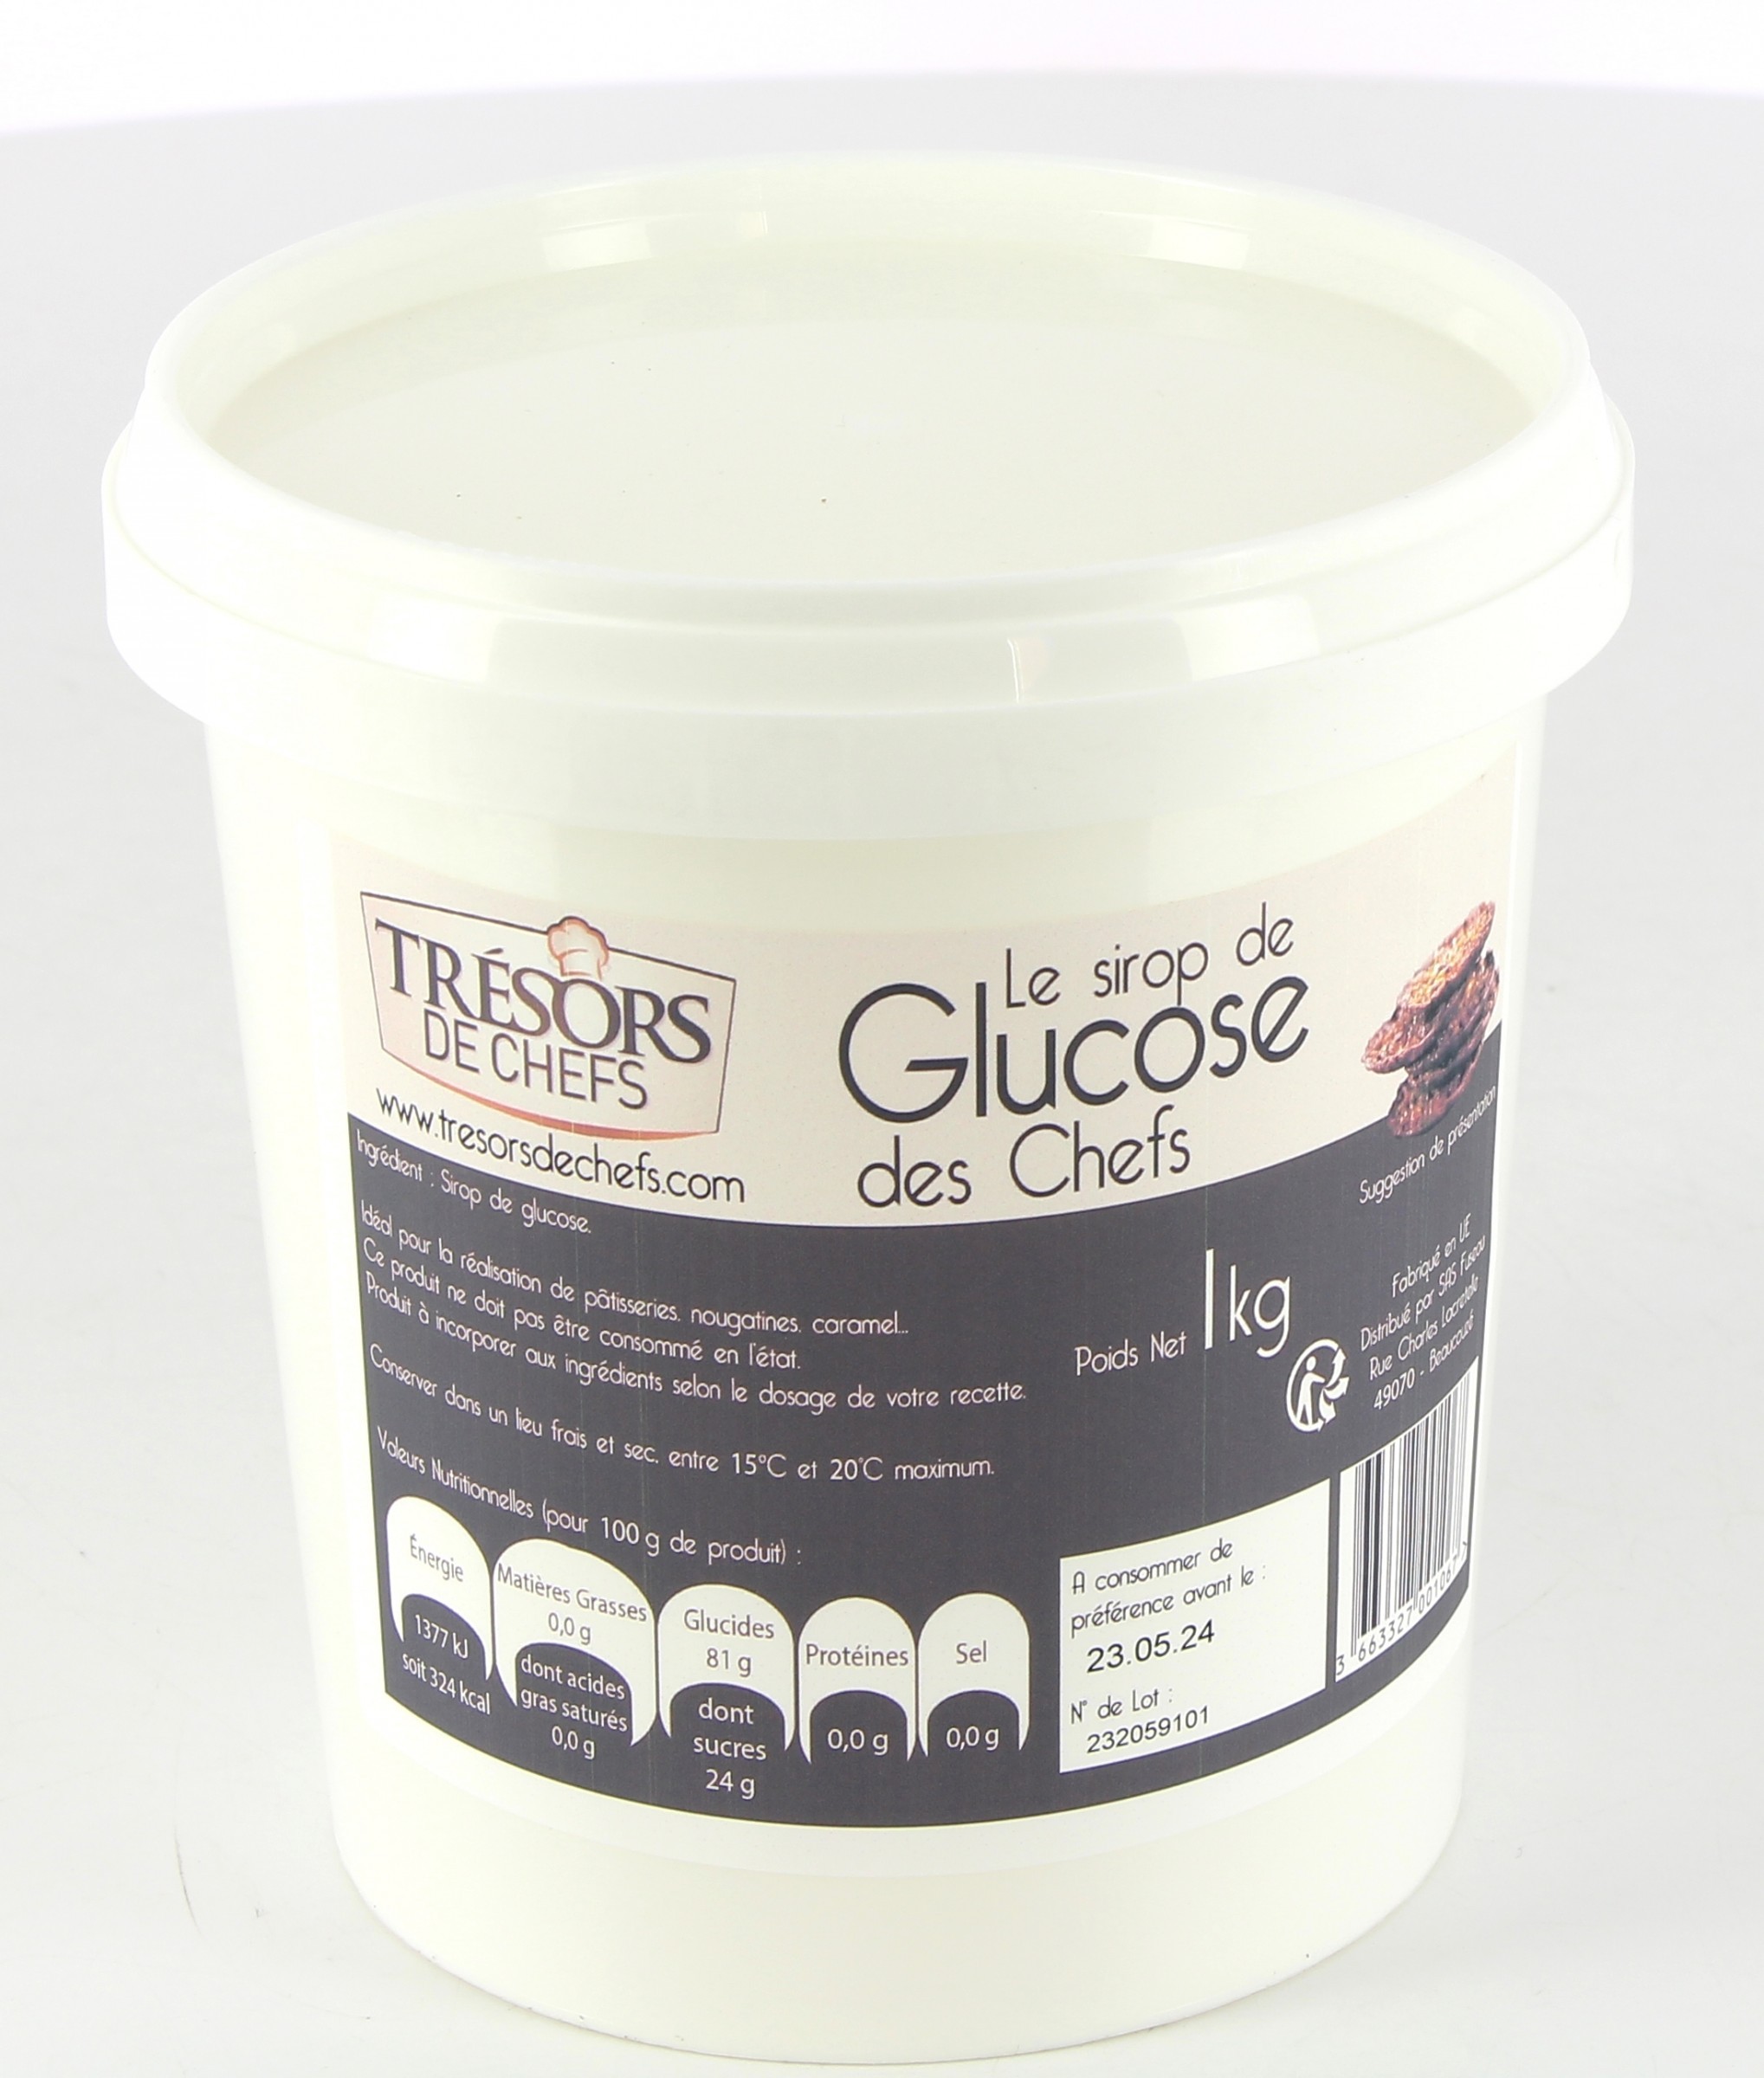 Sirop de glucose 1 kg- Glucose prêt à l'emploi - Epicerie du Chef